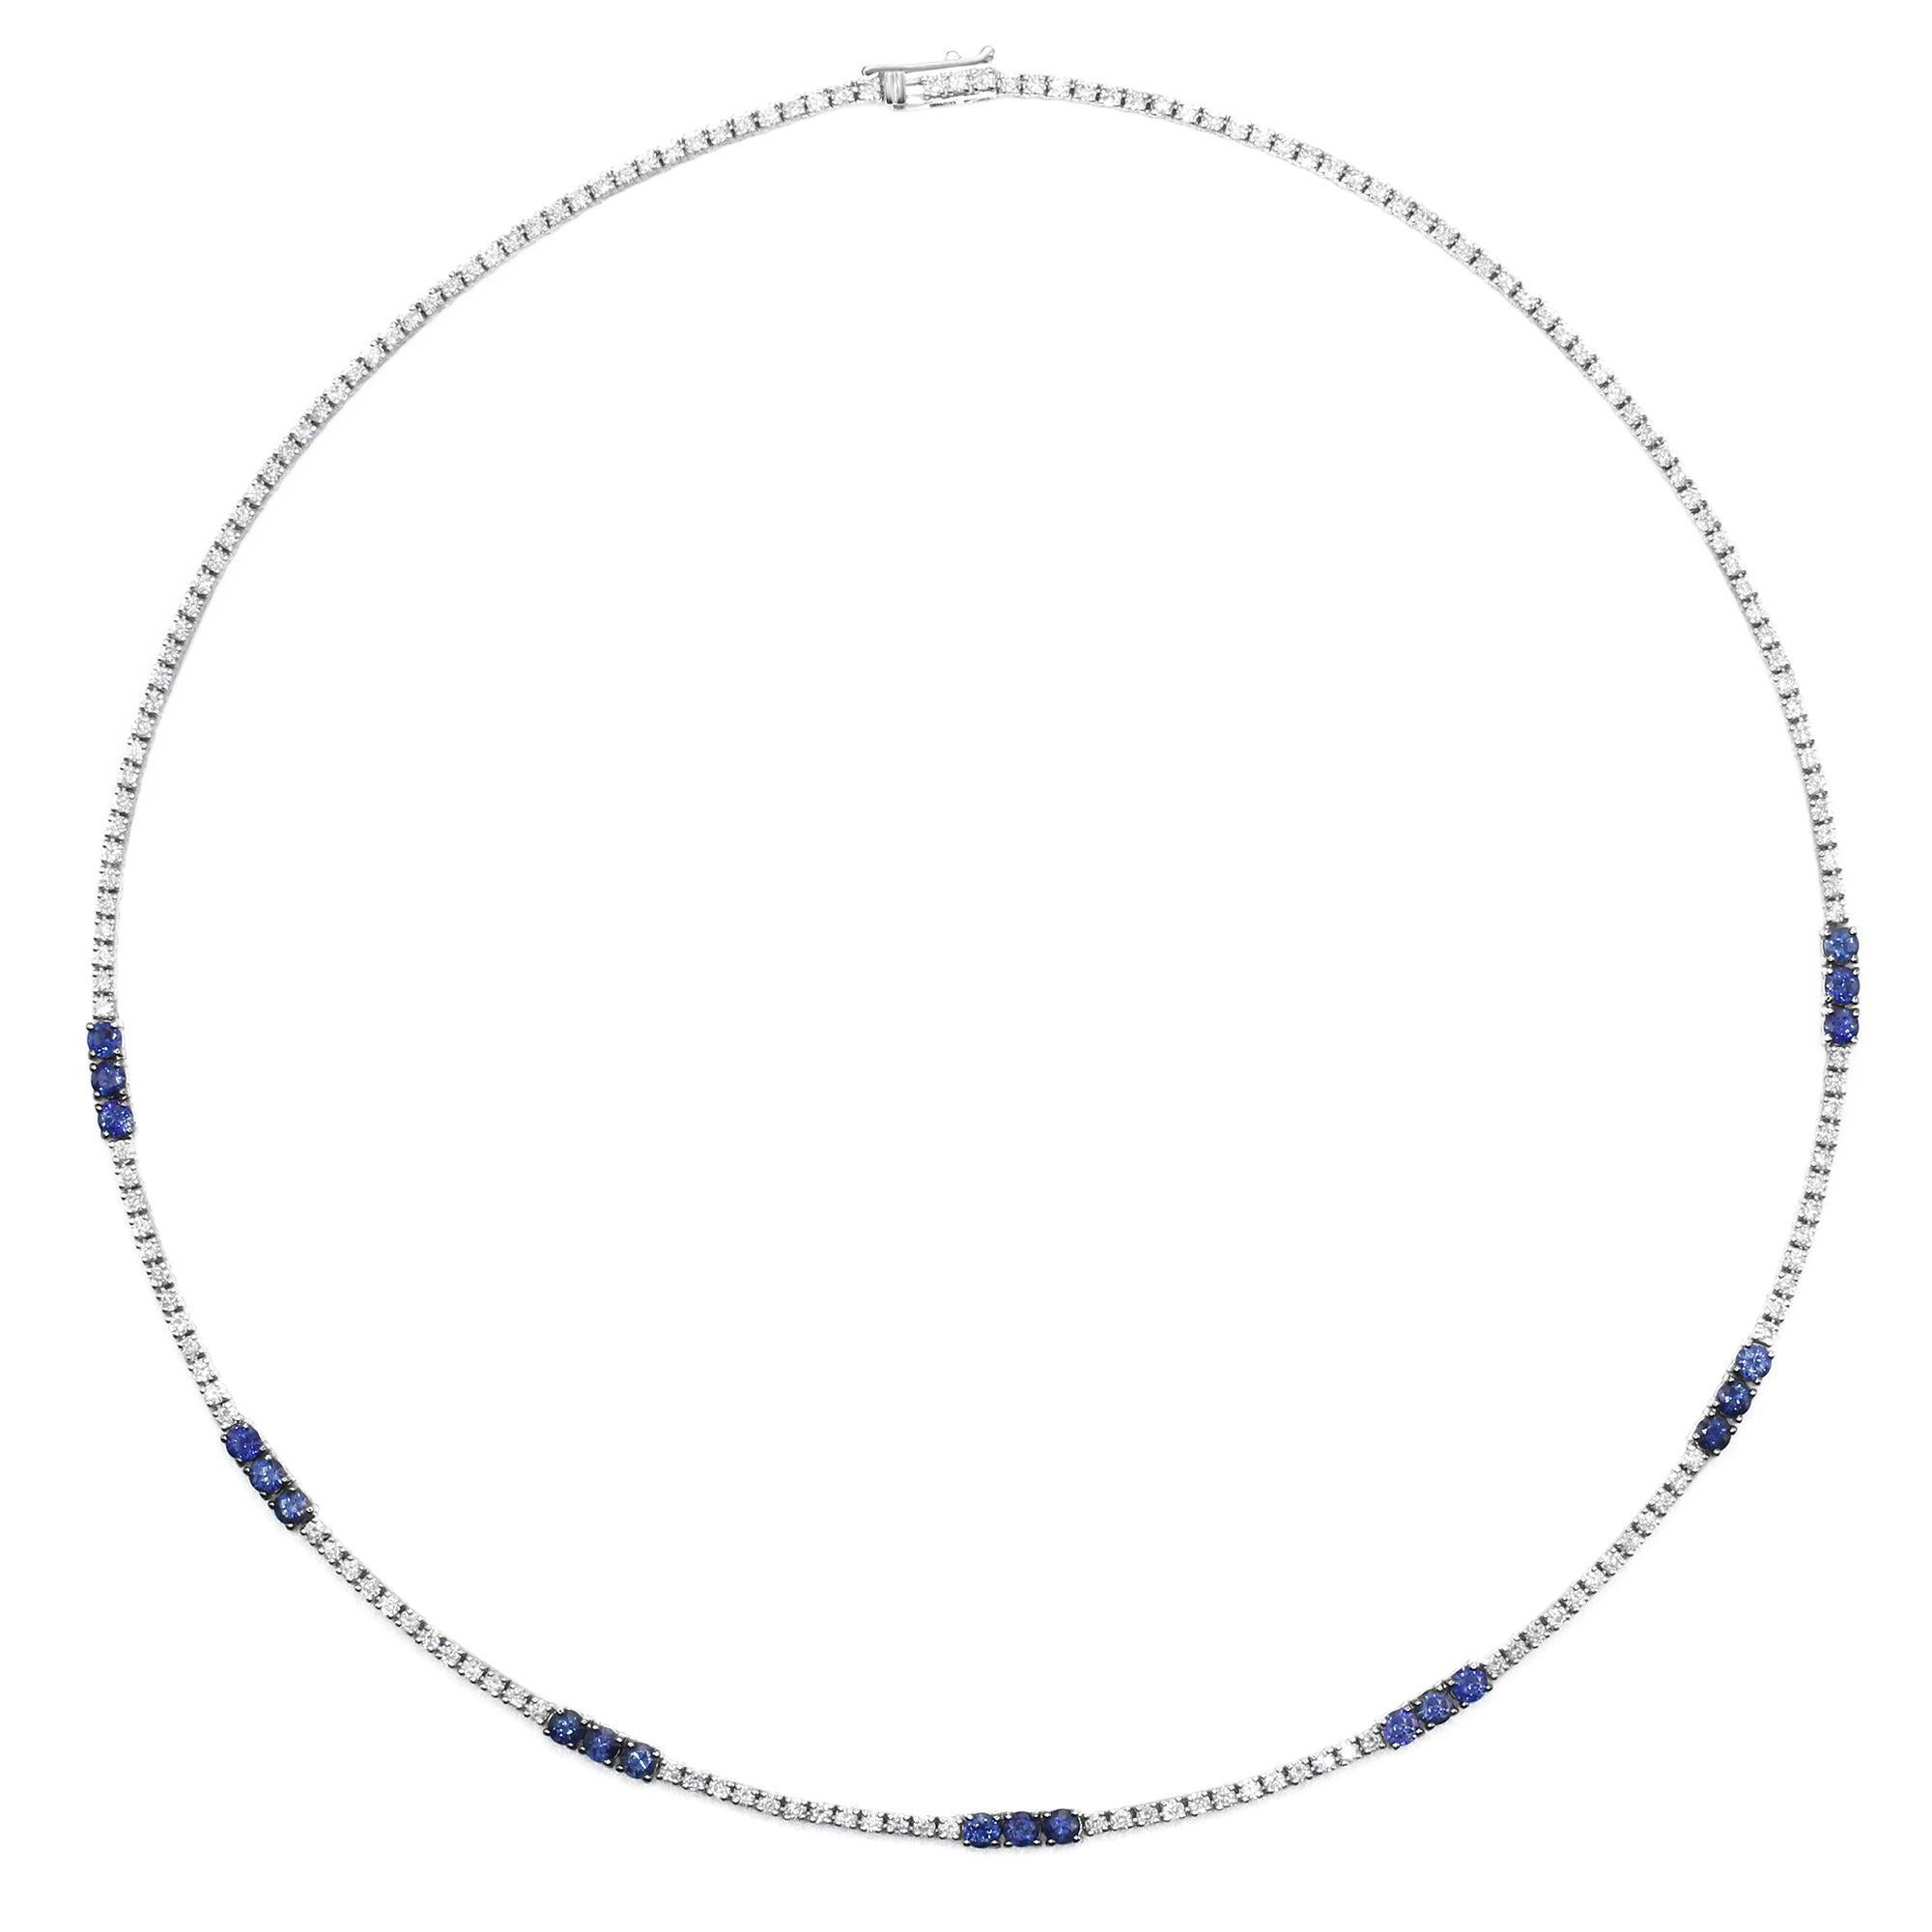 Diese atemberaubende Tennis-Halskette besteht aus weißen Diamanten im Rundschliff und blauen Saphiren. Alle Steine sind in 14 Karat Weißgold gefasst. Die Halskette wird mit einem Verschluss gesichert. Länge: 17 Zoll. Breite: 2,80 mm. Gesamtgewicht